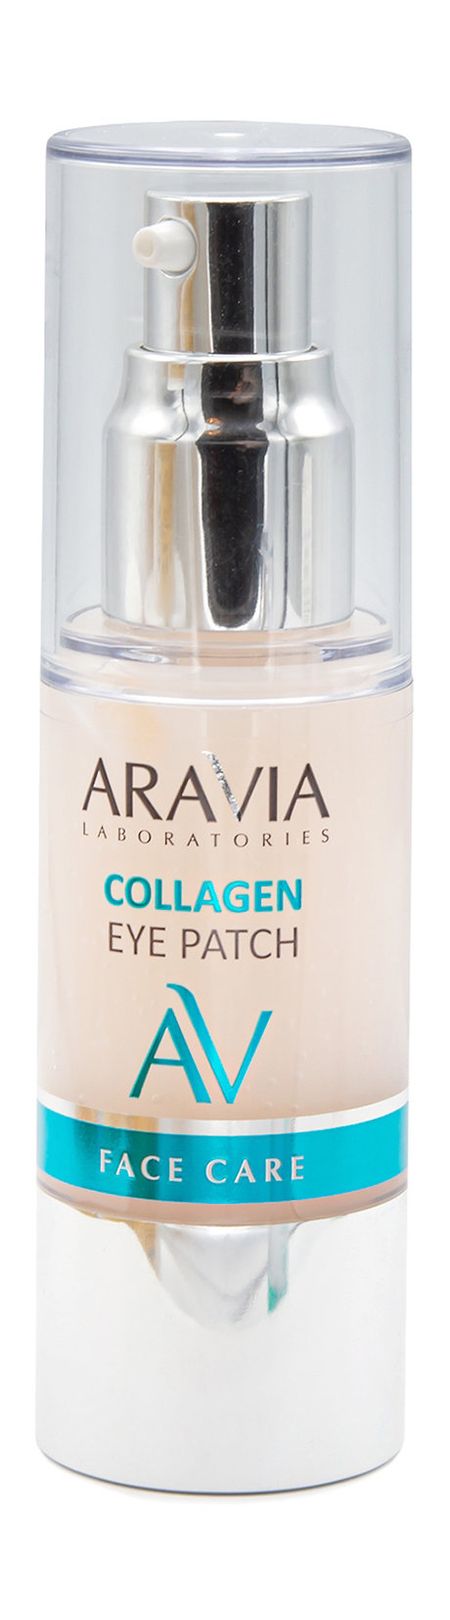 Aravia Laboratories Collagen Eye Patch